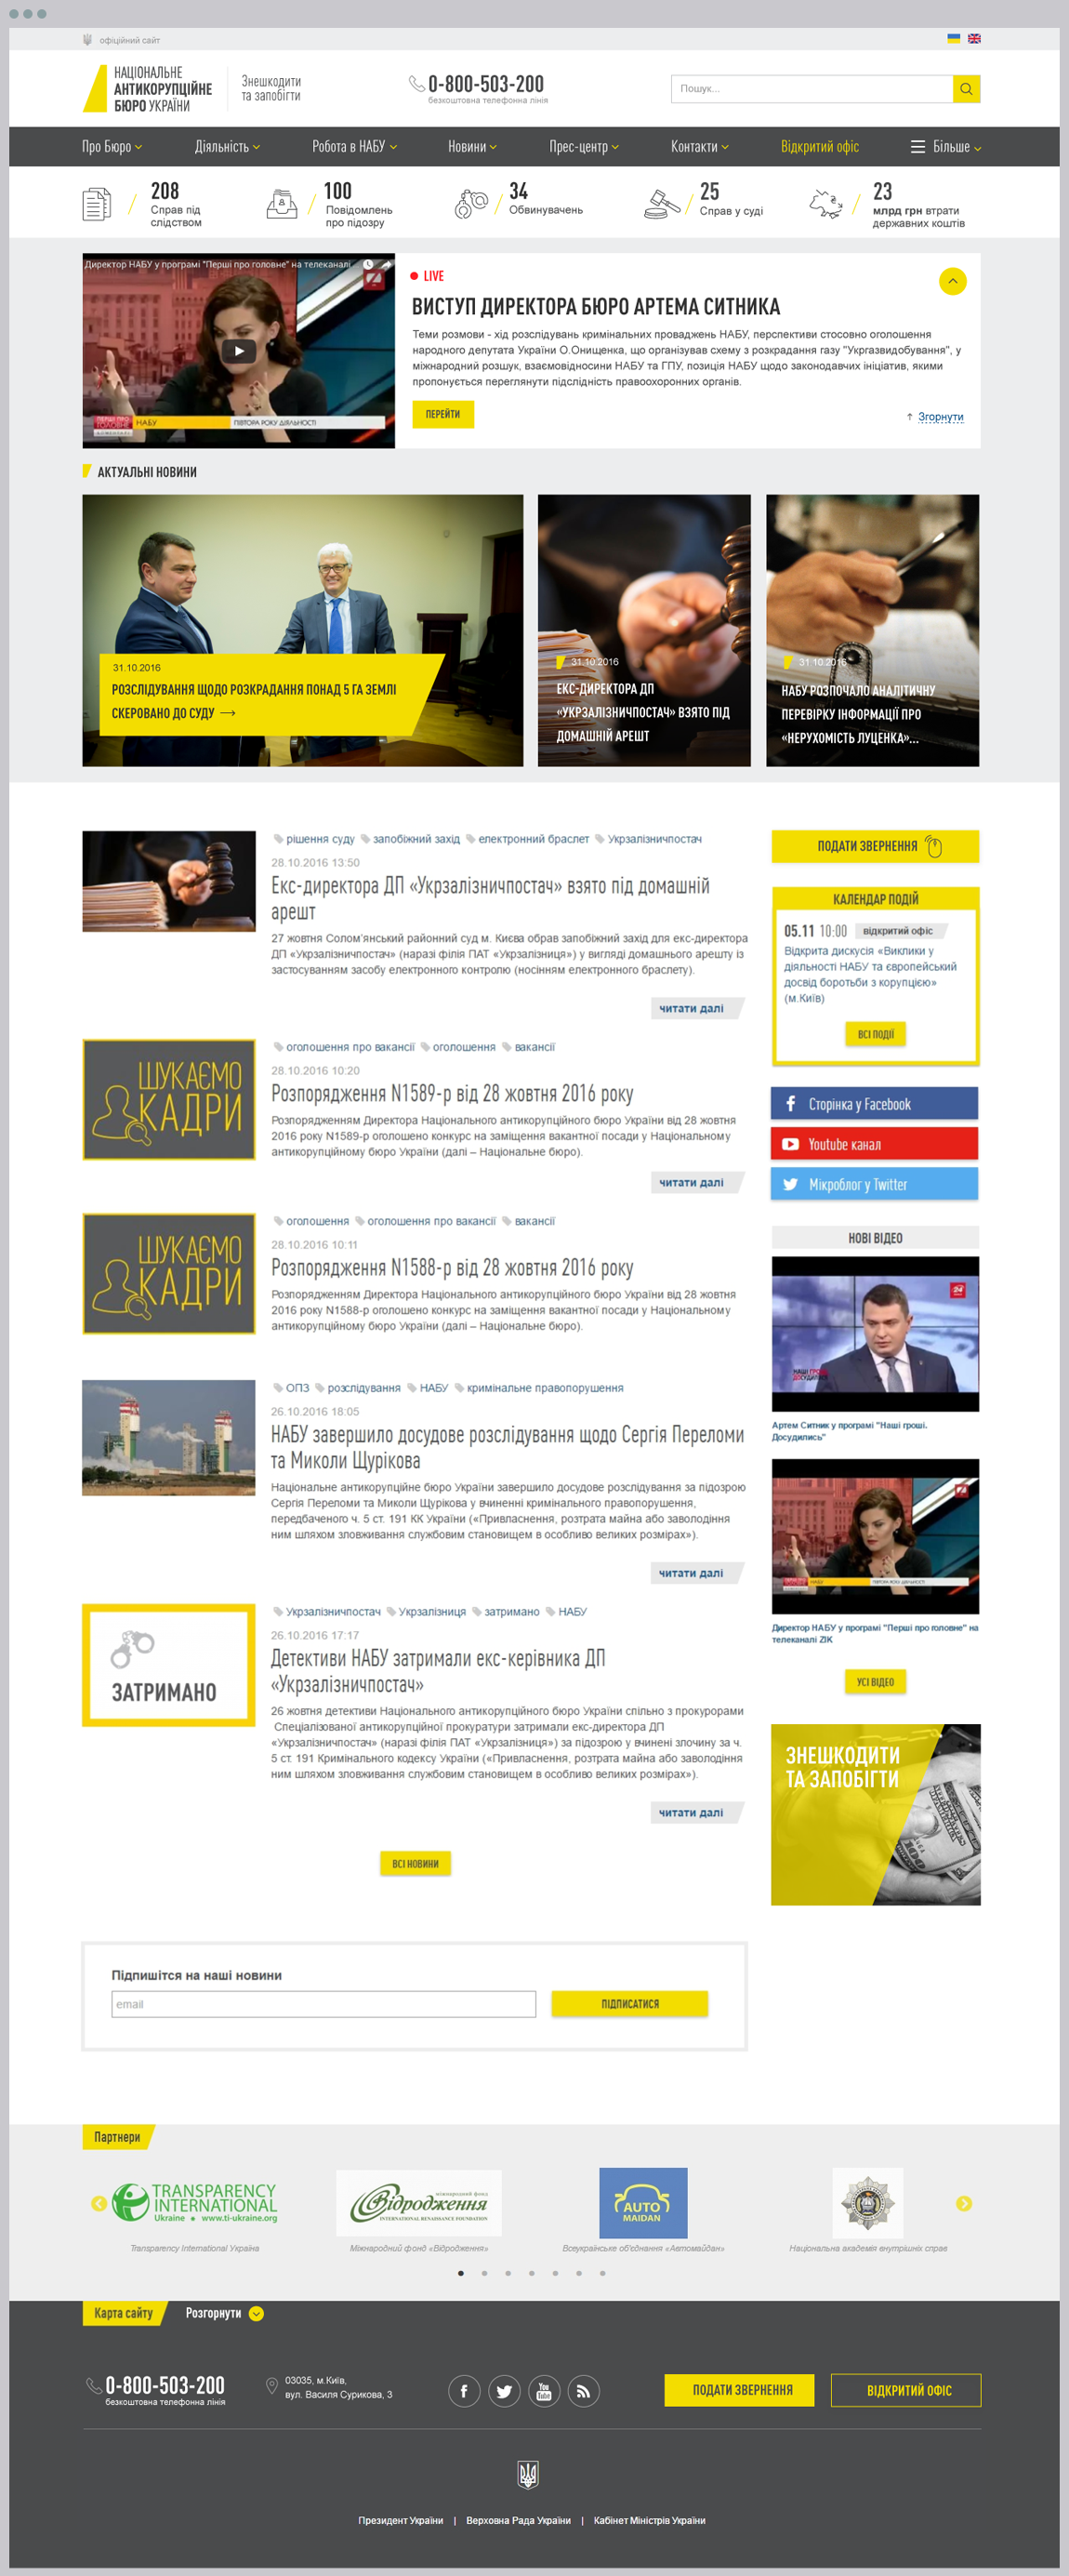 Редизайн сайта Национального антикоррупционного бюро Украины | проекты Evergreen 10